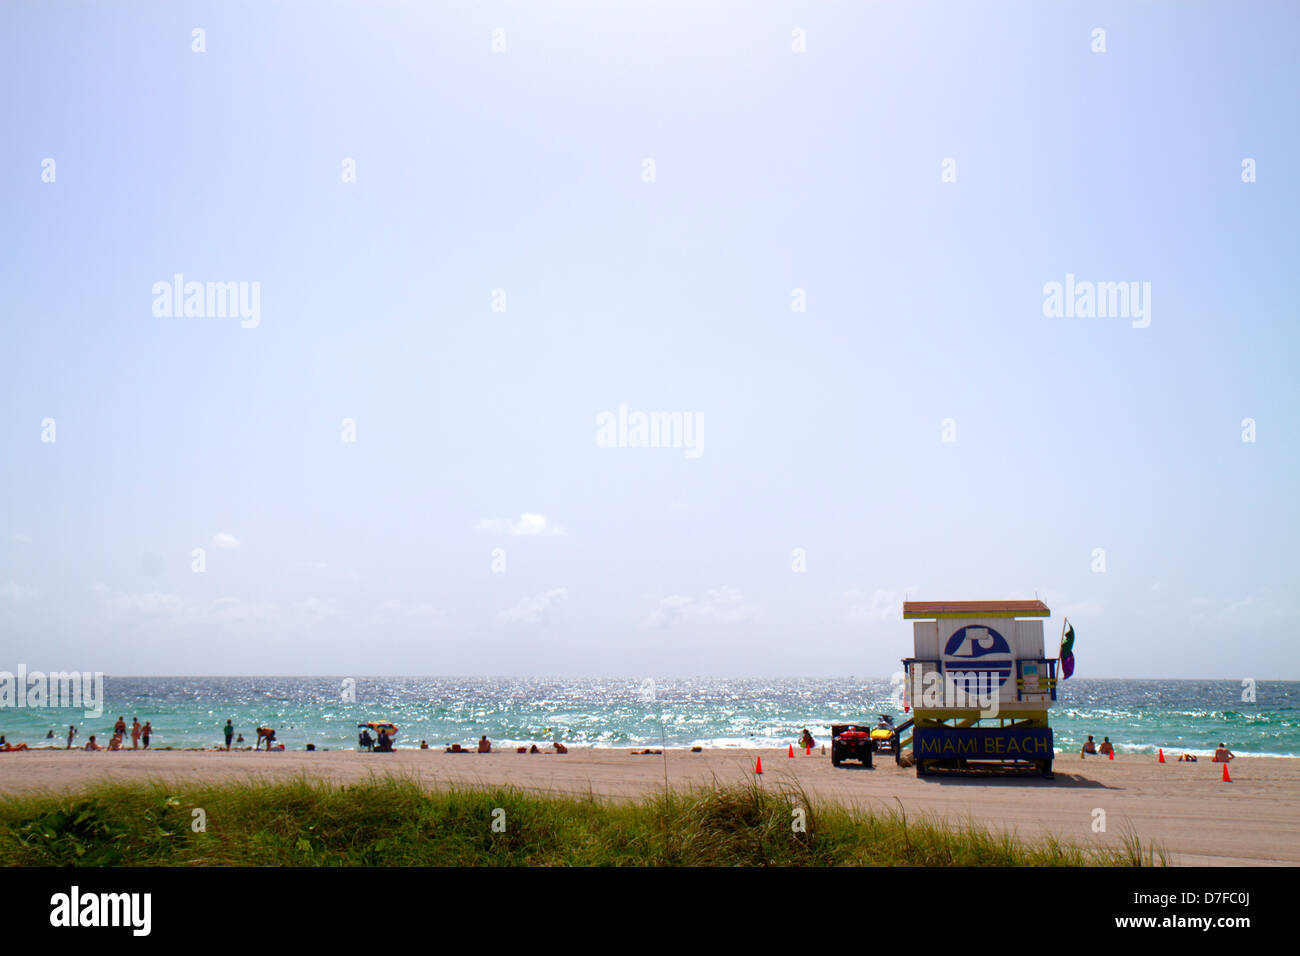 Miami Beach Florida, Oceano Atlantico, acqua, spiaggia pubblica, stazione di bagnino, bagnanti, sabbia, cielo, FL120720029 Foto Stock